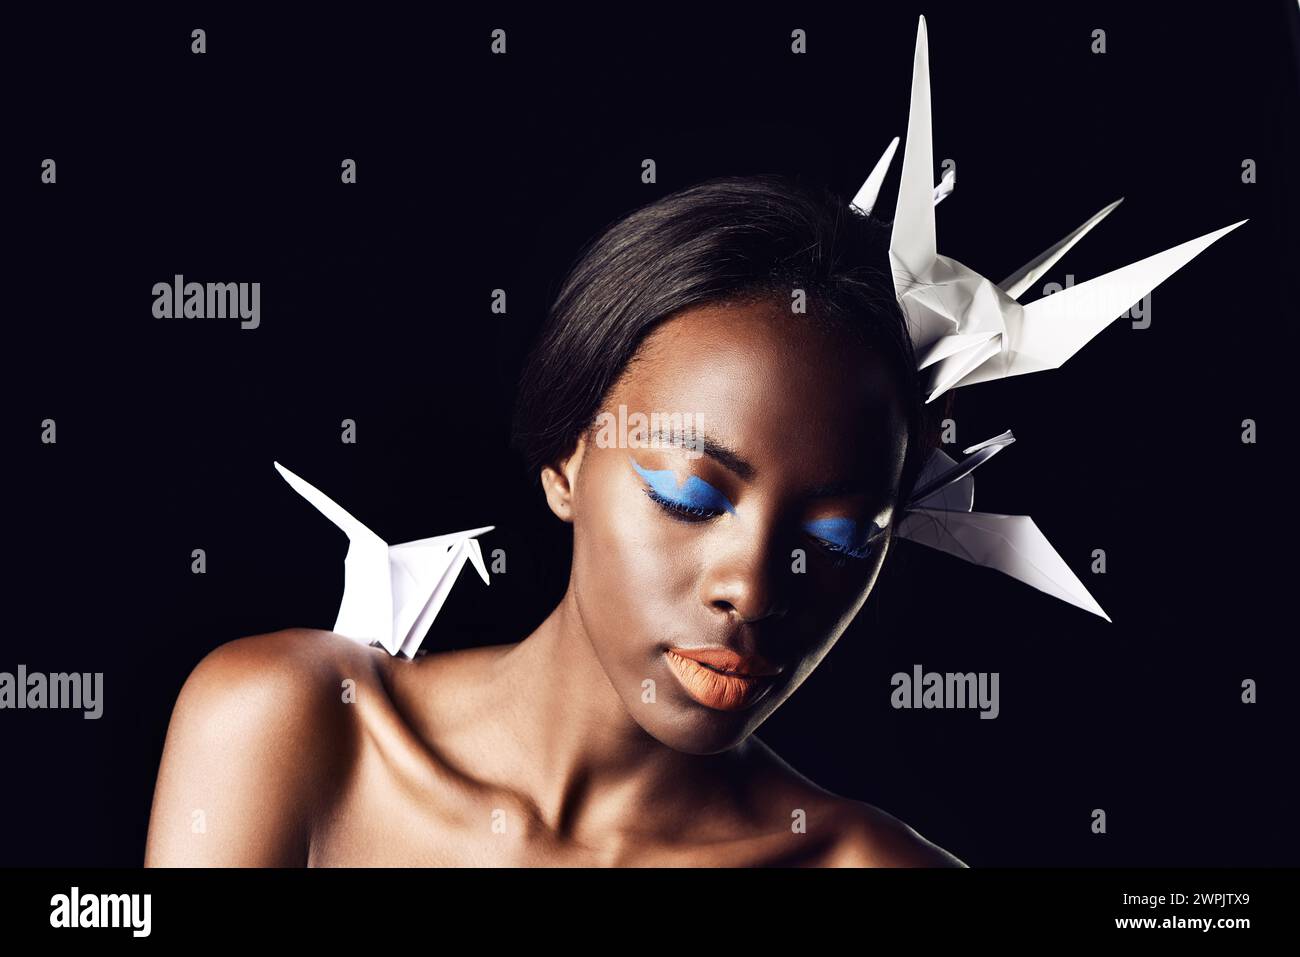 Schwarze Frau, Make-up und schöne Kunst mit Schönheit, Kosmetik oder Origami-Vögeln auf dunklem Studiohintergrund. Nahaufnahme oder Gesicht einer afrikanischen weiblichen Person oder Stockfoto